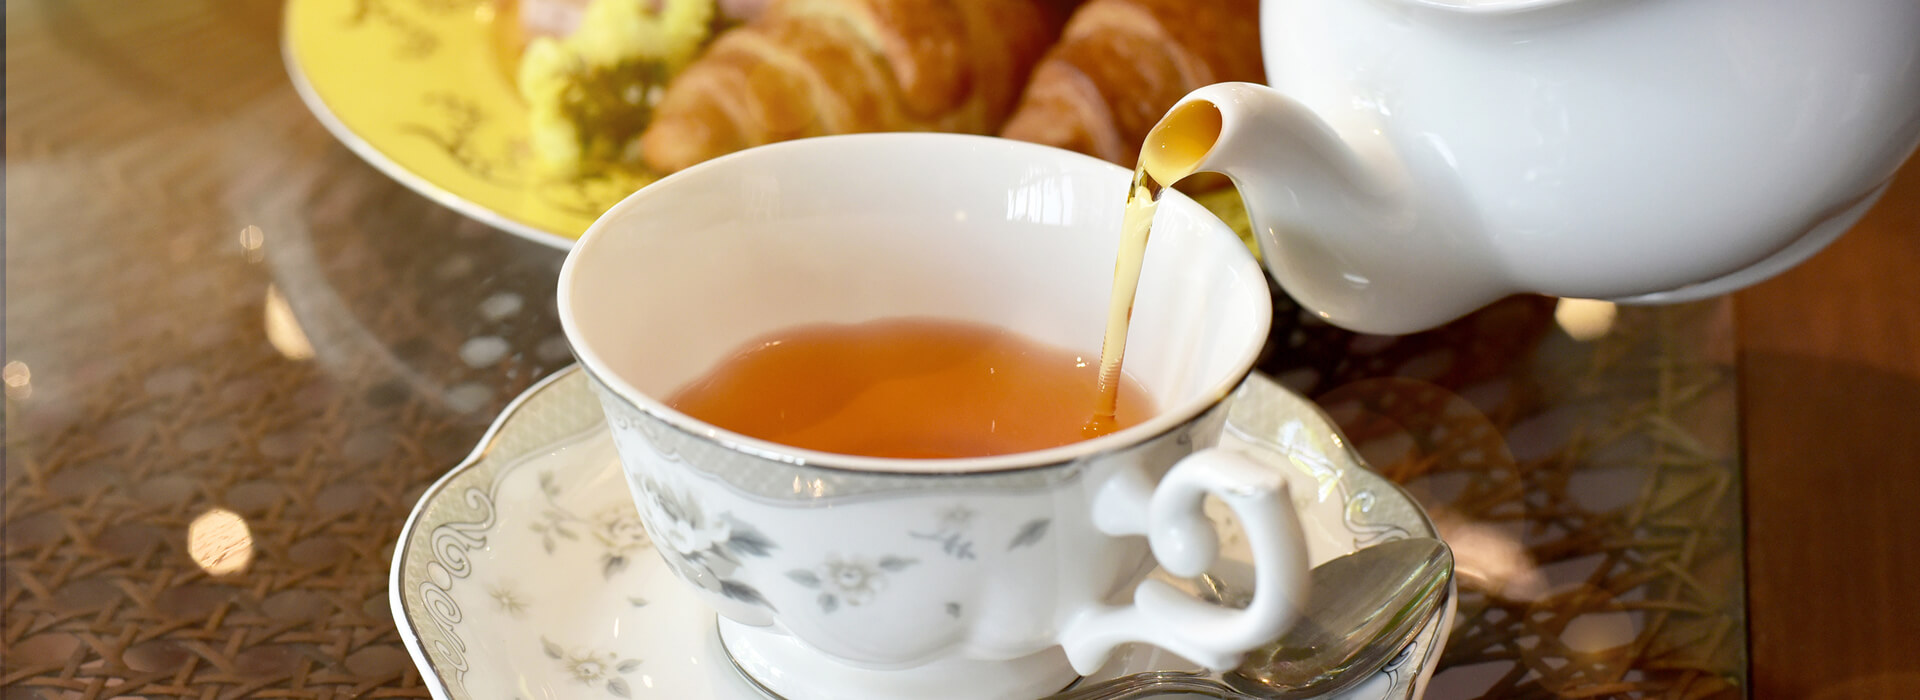 Προϊόντα St. Dalfour - Τσάι